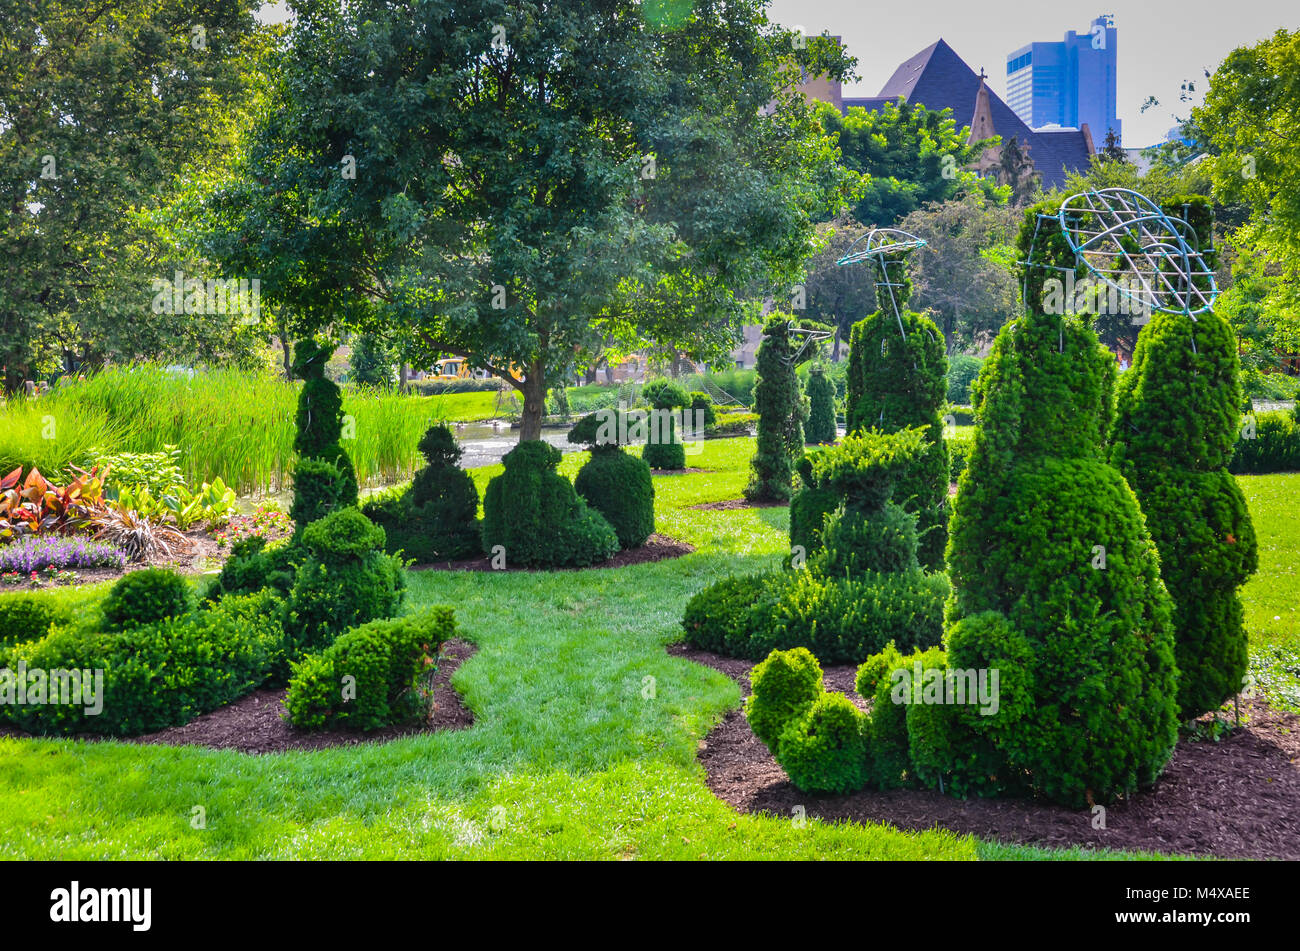 Le parc jardin topiaire à Columbus, Ohio se trouve sur les vestiges de l'ancien parc de l'École des Sourds. Bien qu'il soit devenu affectueusement connu sous le nom Topiary Banque D'Images